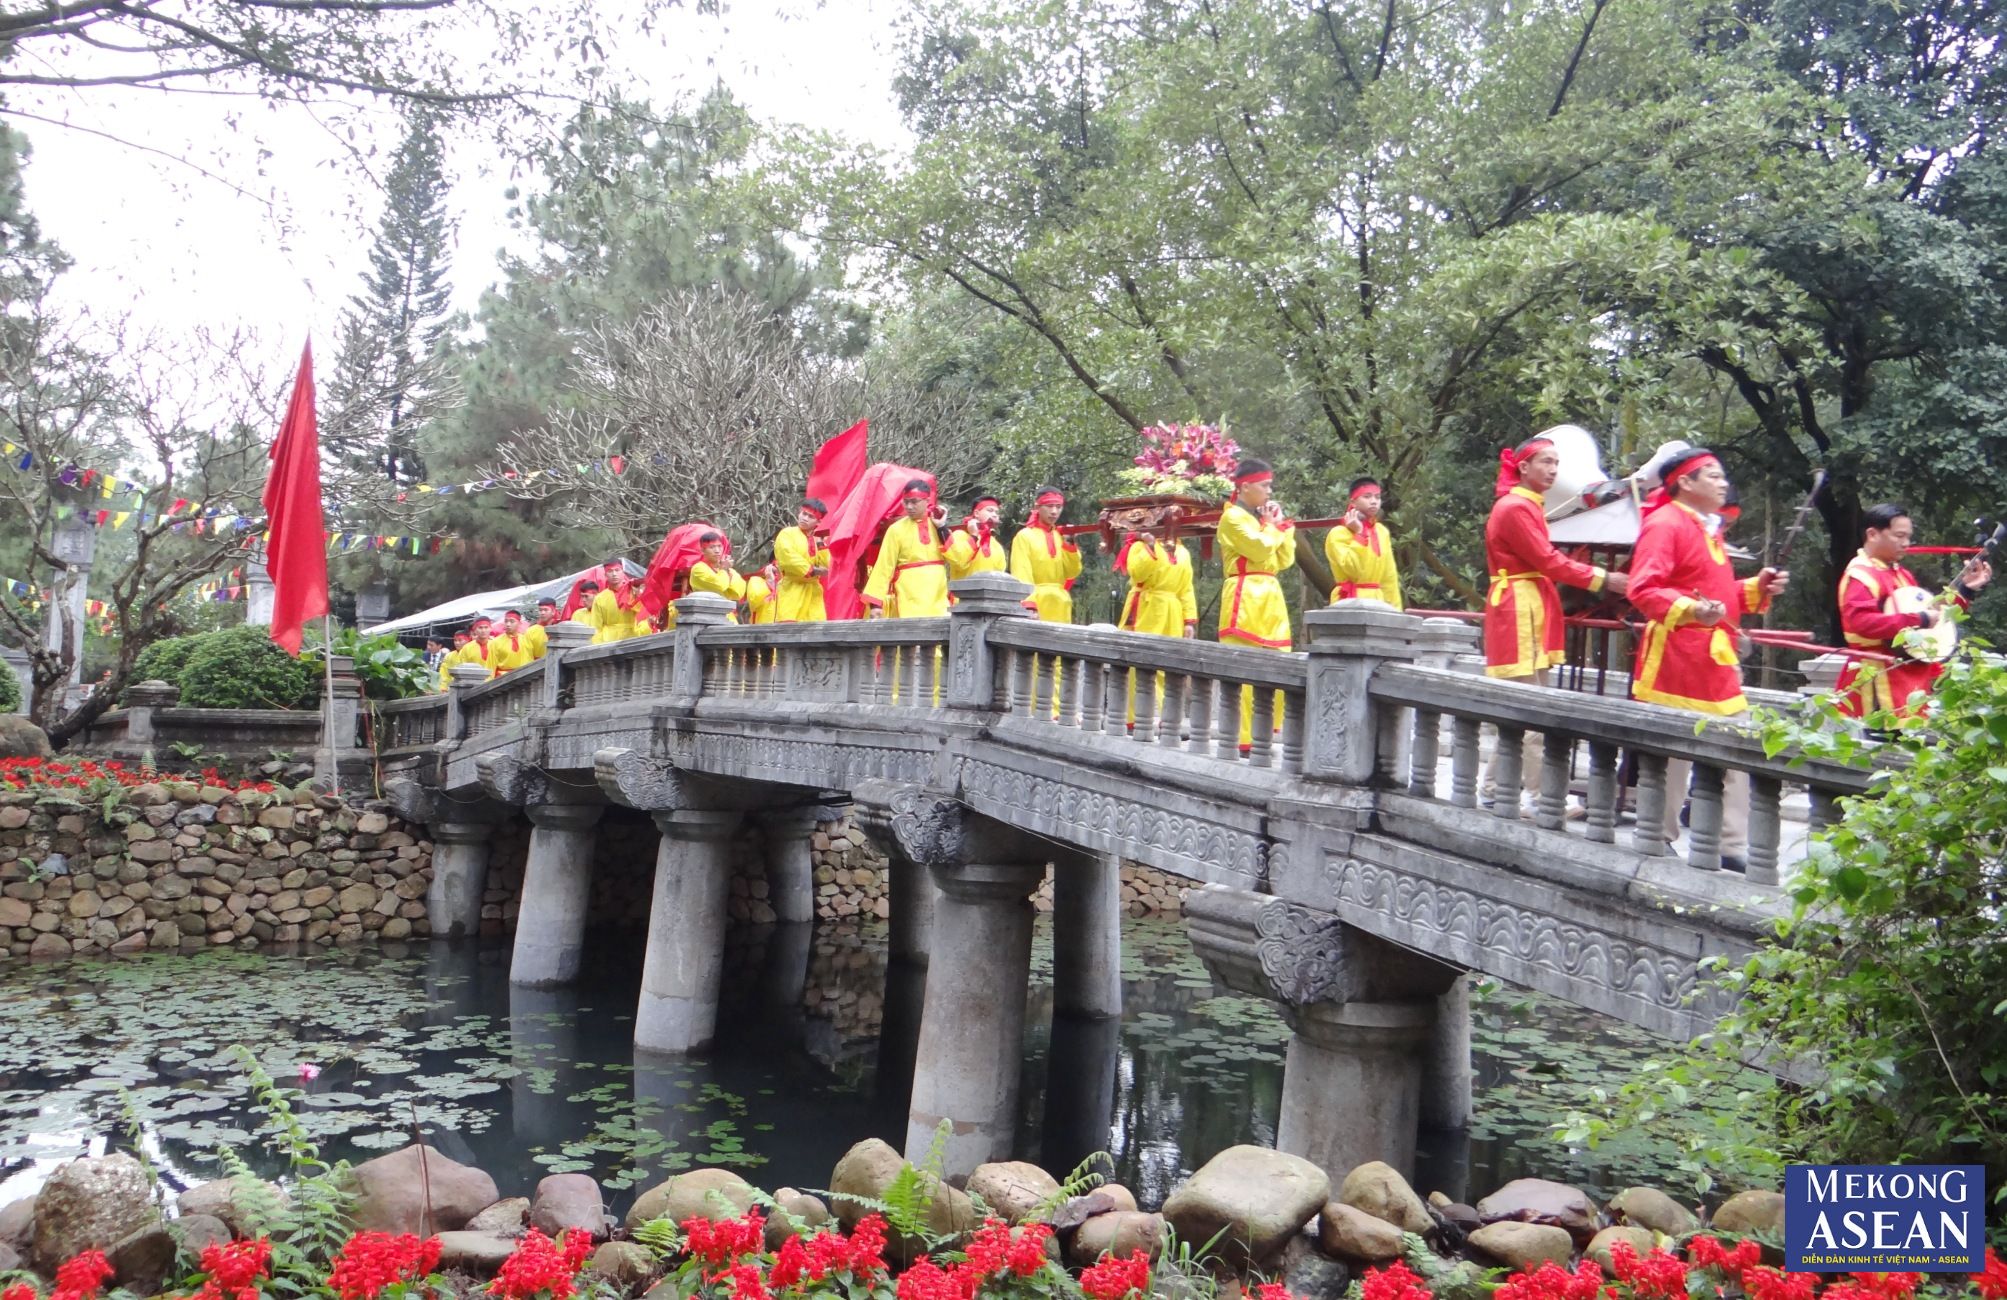 Độc đáo lễ rước bánh chưng, bánh giầy tại lễ hội mùa xuân Côn Sơn - Kiếp Bạc